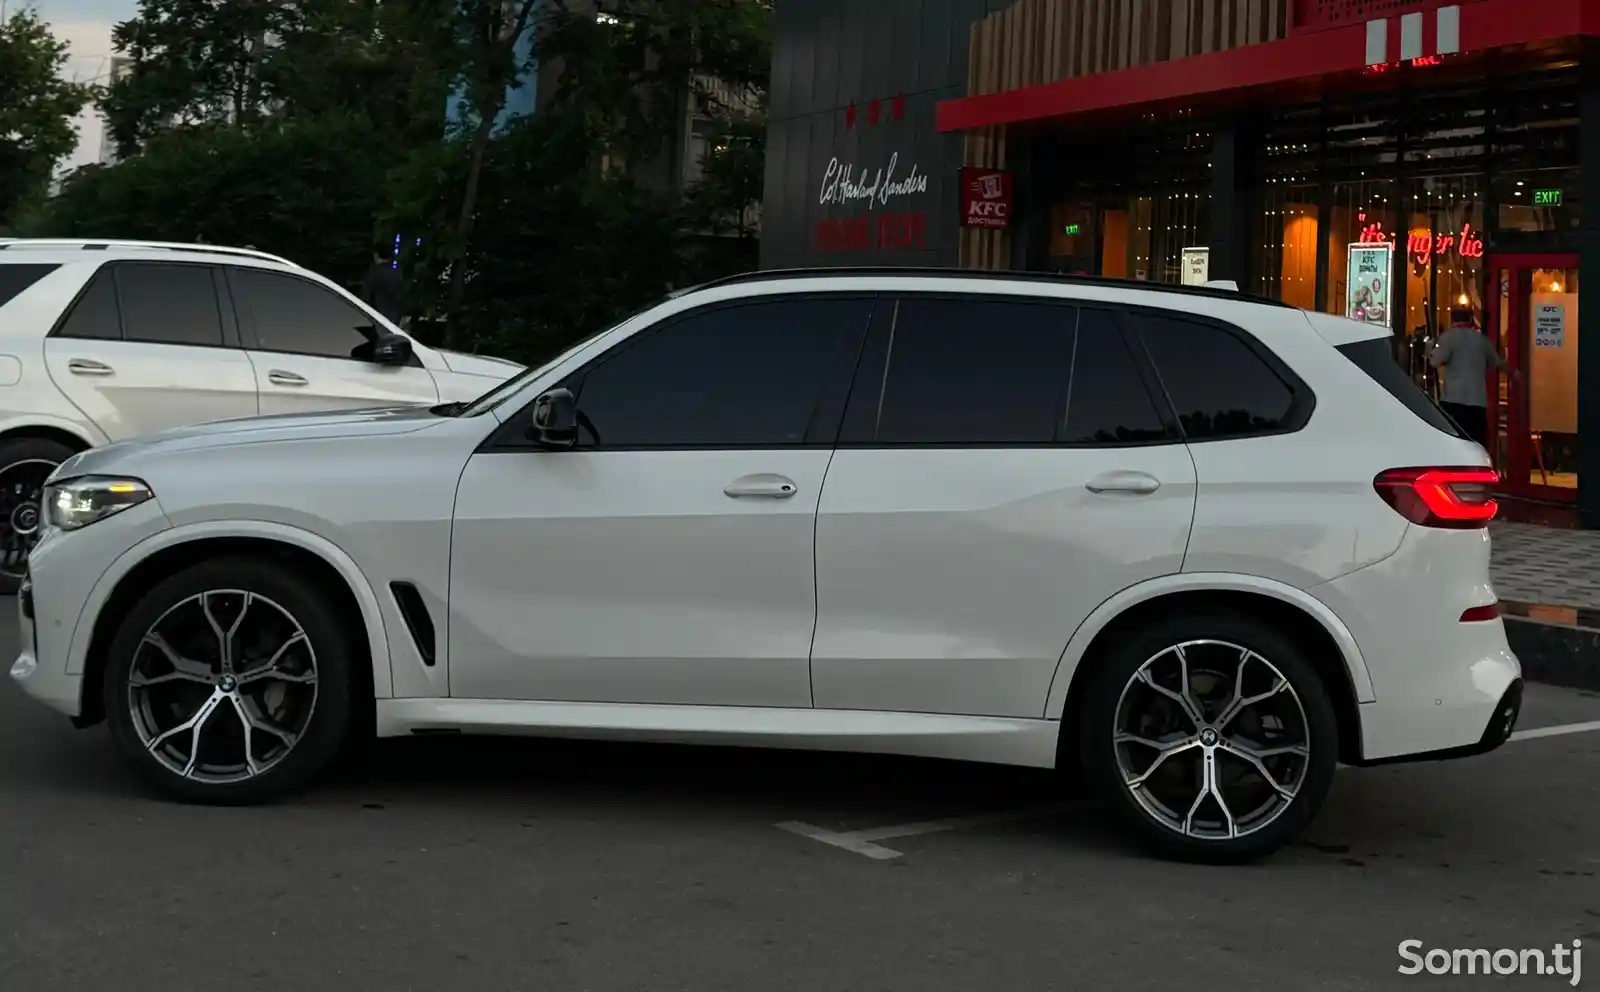 BMW X5, 2019-4